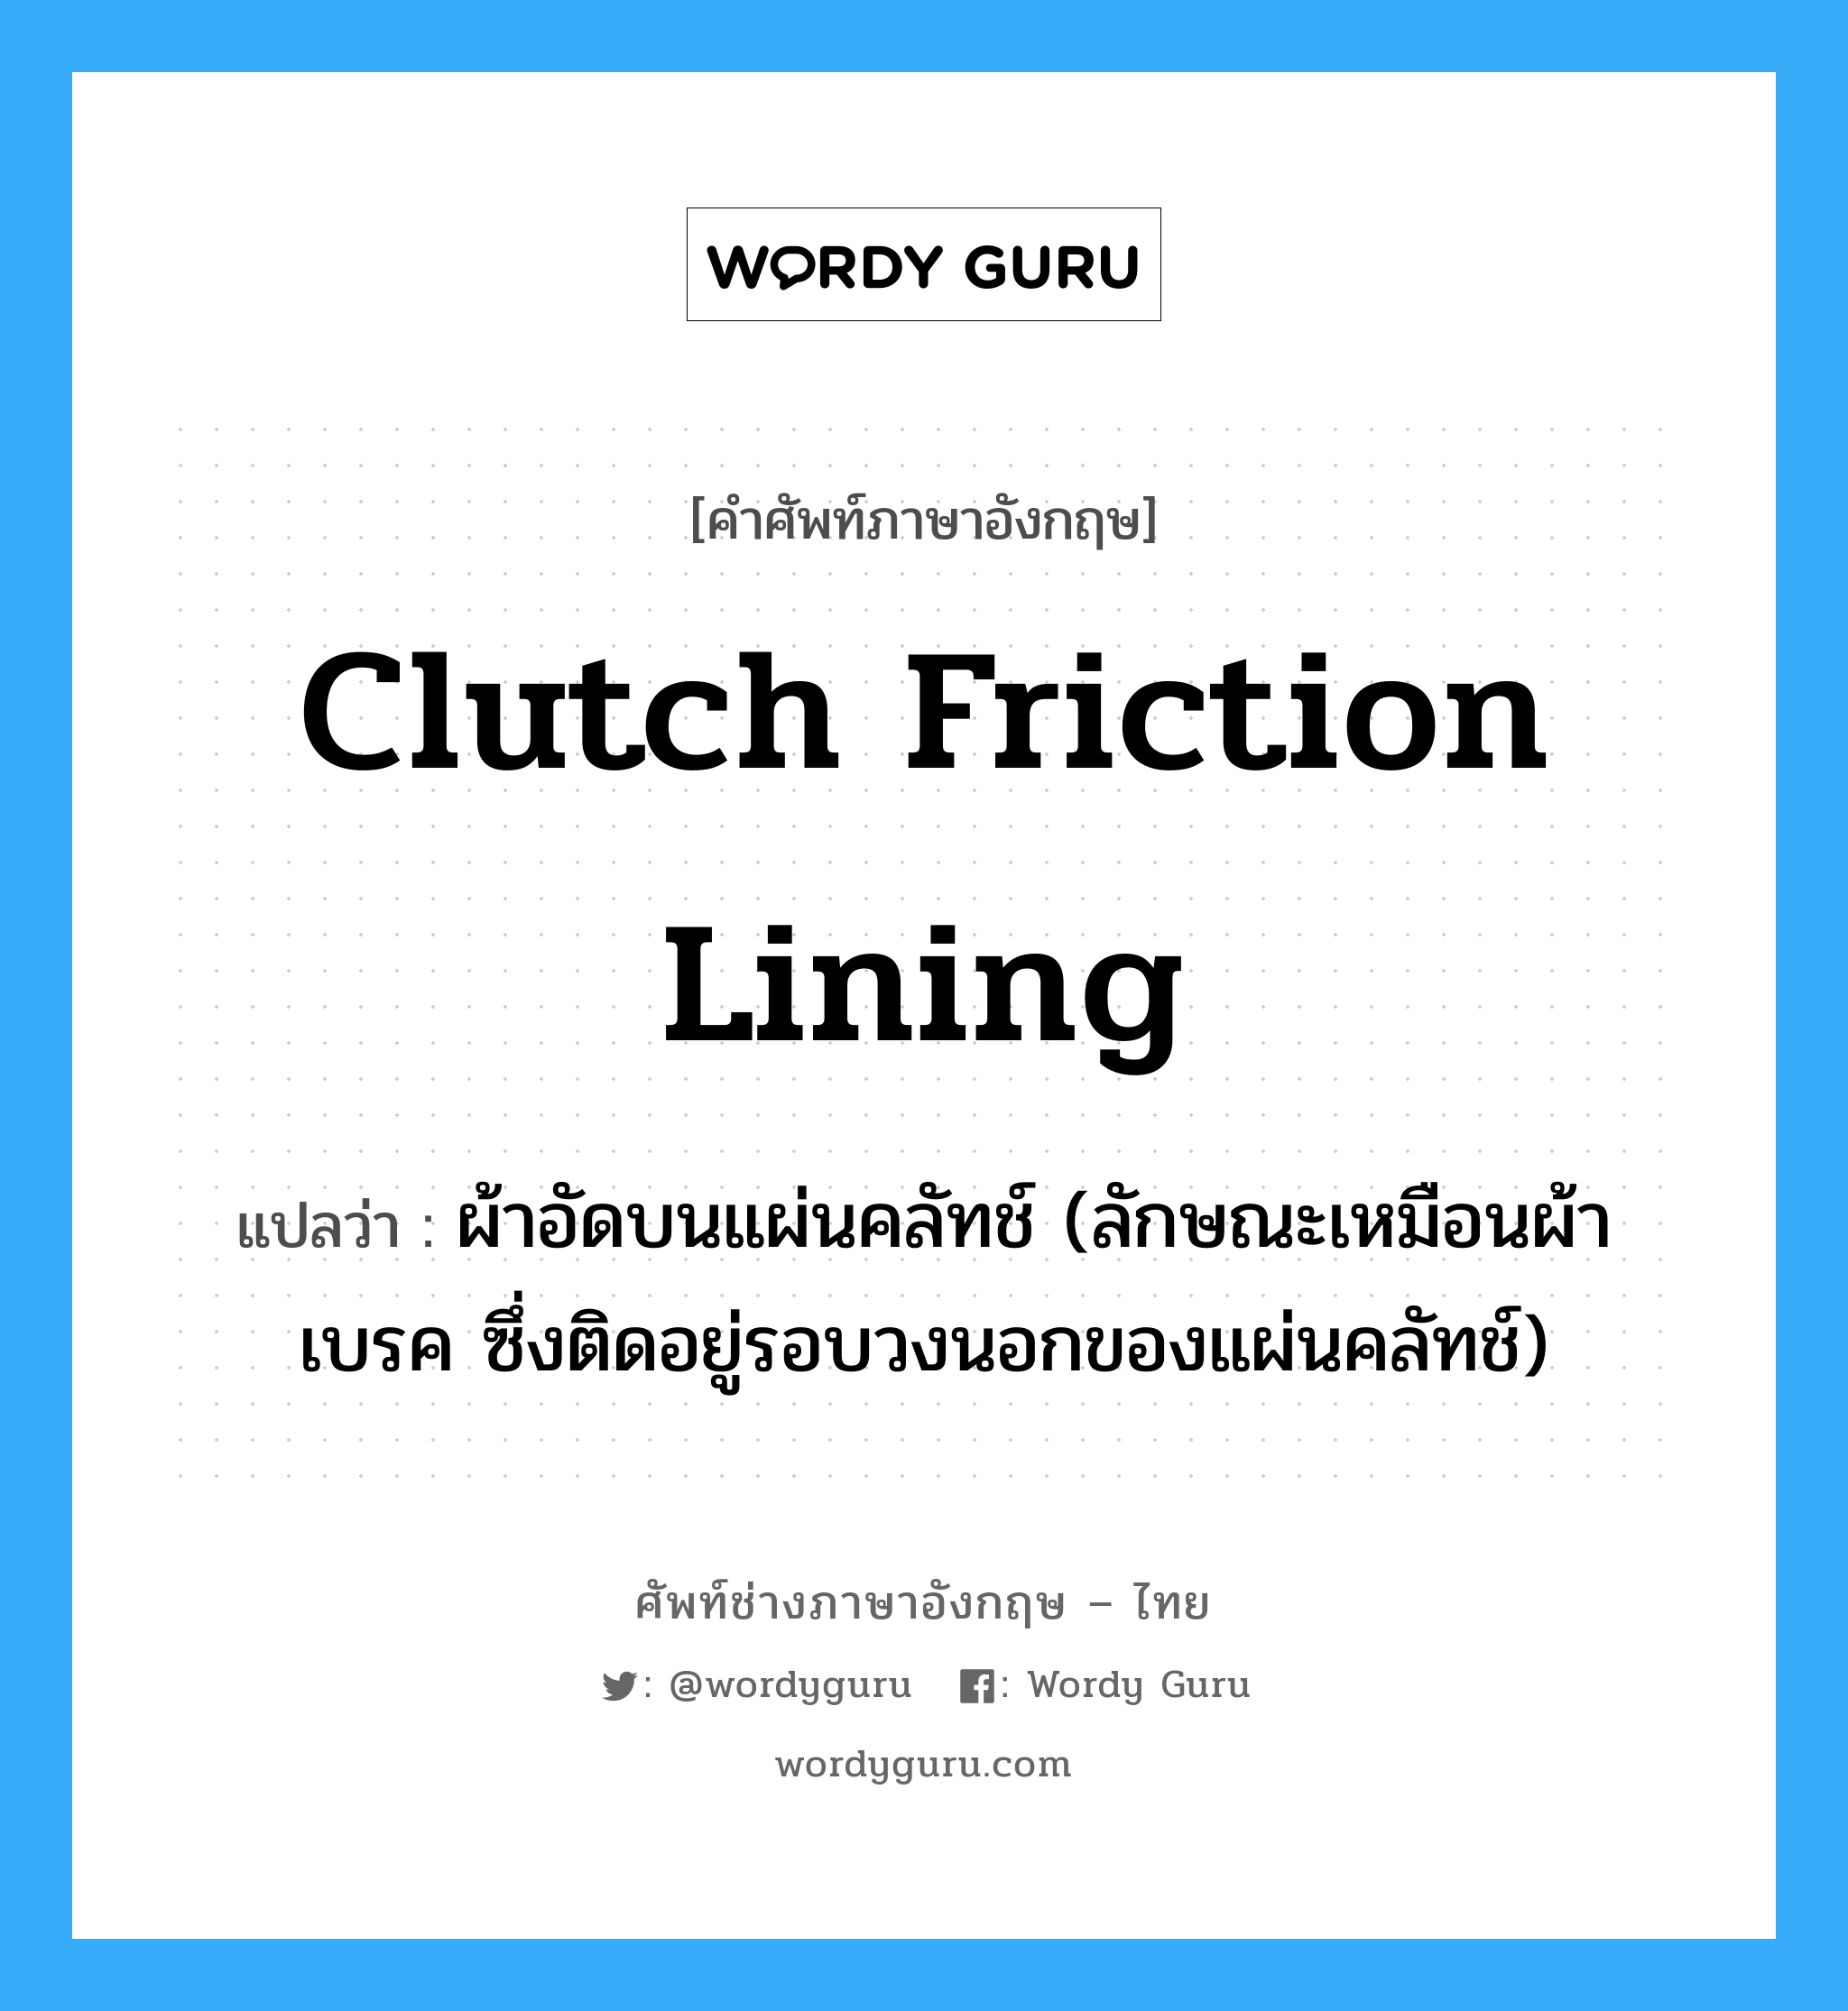 clutch friction lining แปลว่า?, คำศัพท์ช่างภาษาอังกฤษ - ไทย clutch friction lining คำศัพท์ภาษาอังกฤษ clutch friction lining แปลว่า ผ้าอัดบนแผ่นคลัทช์ (ลักษณะเหมือนผ้าเบรค ซึ่งติดอยู่รอบวงนอกของแผ่นคลัทช์)